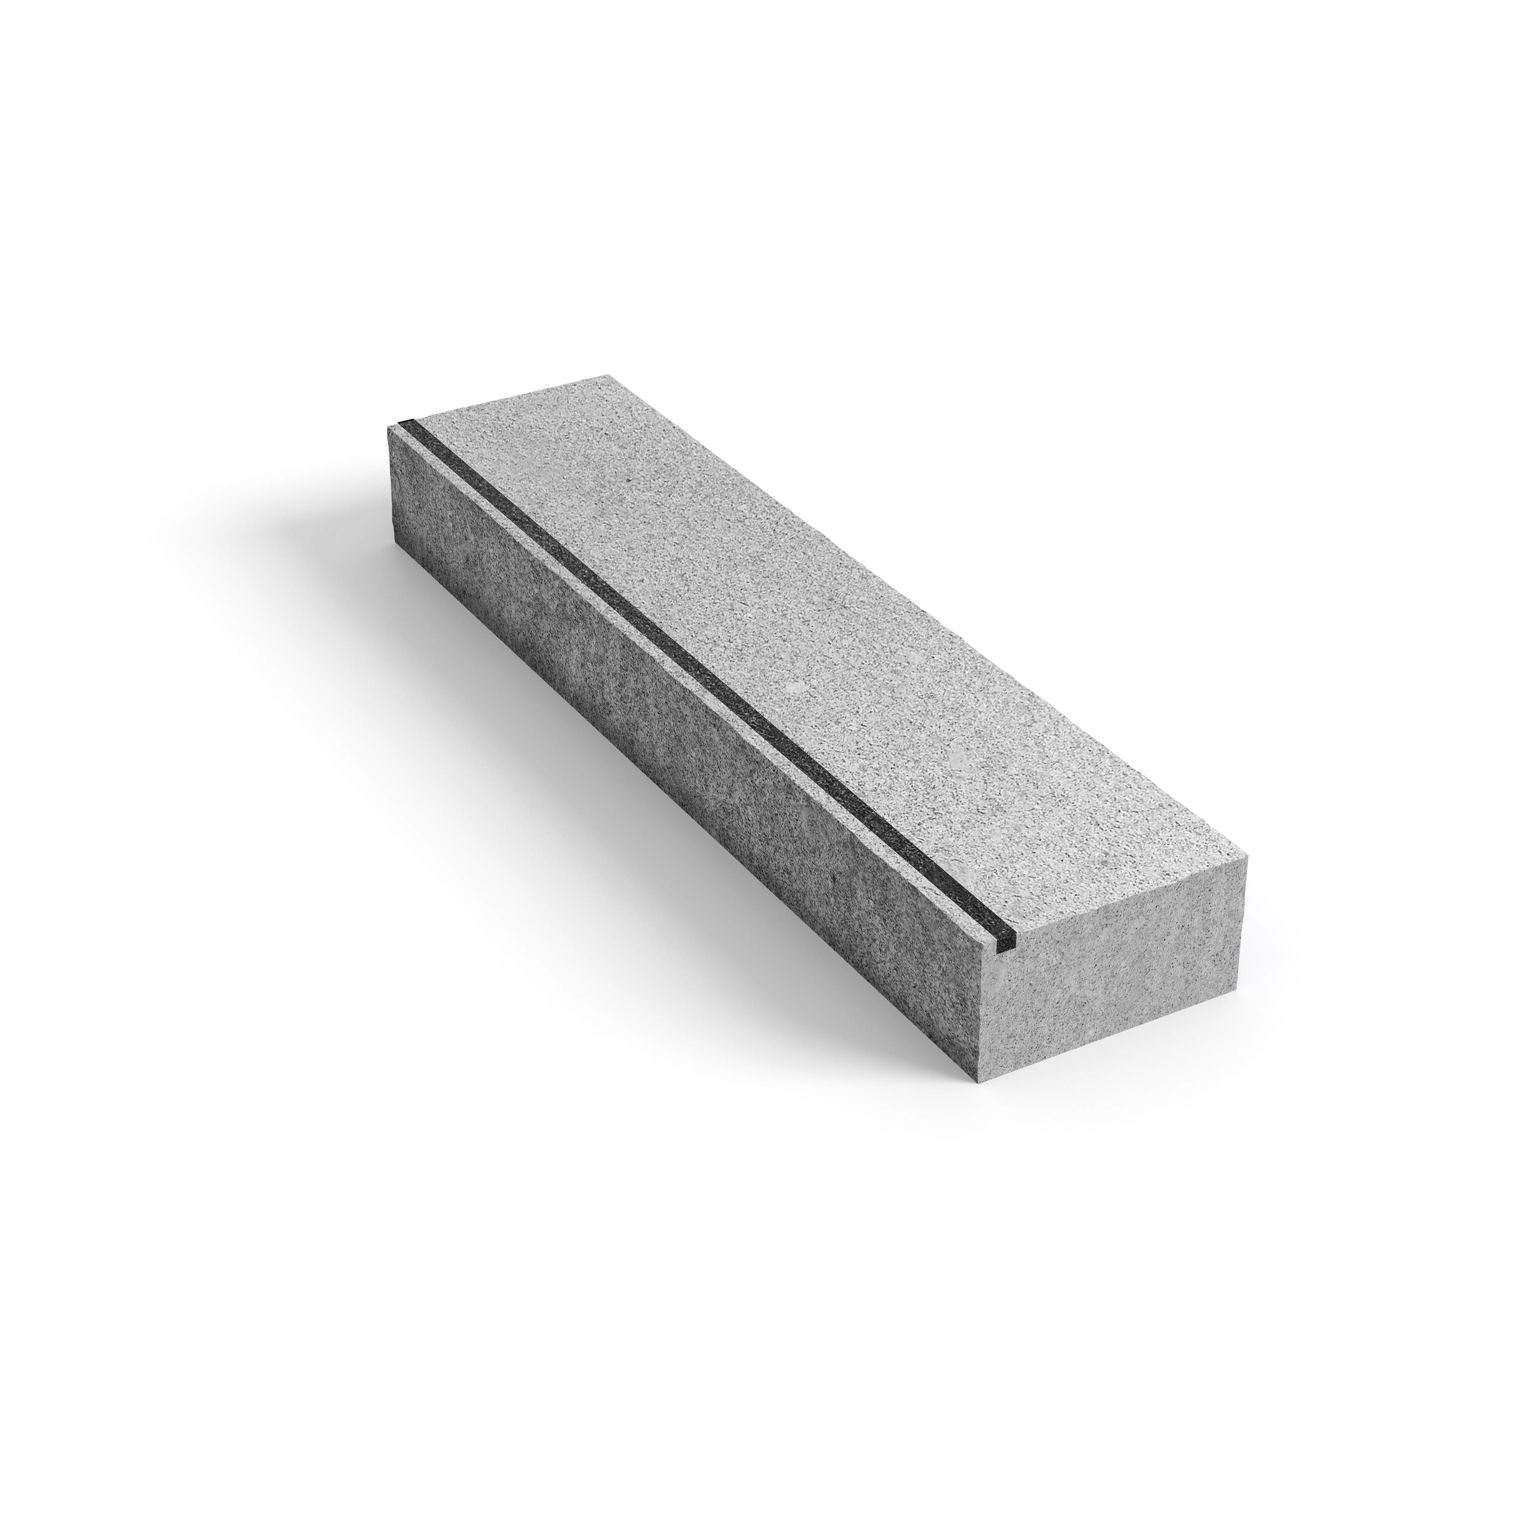 Produktbild på blocksteg i granit med infräst kontrastmarkering;med måtten 1500x350x150 mm i färgen Porto grå